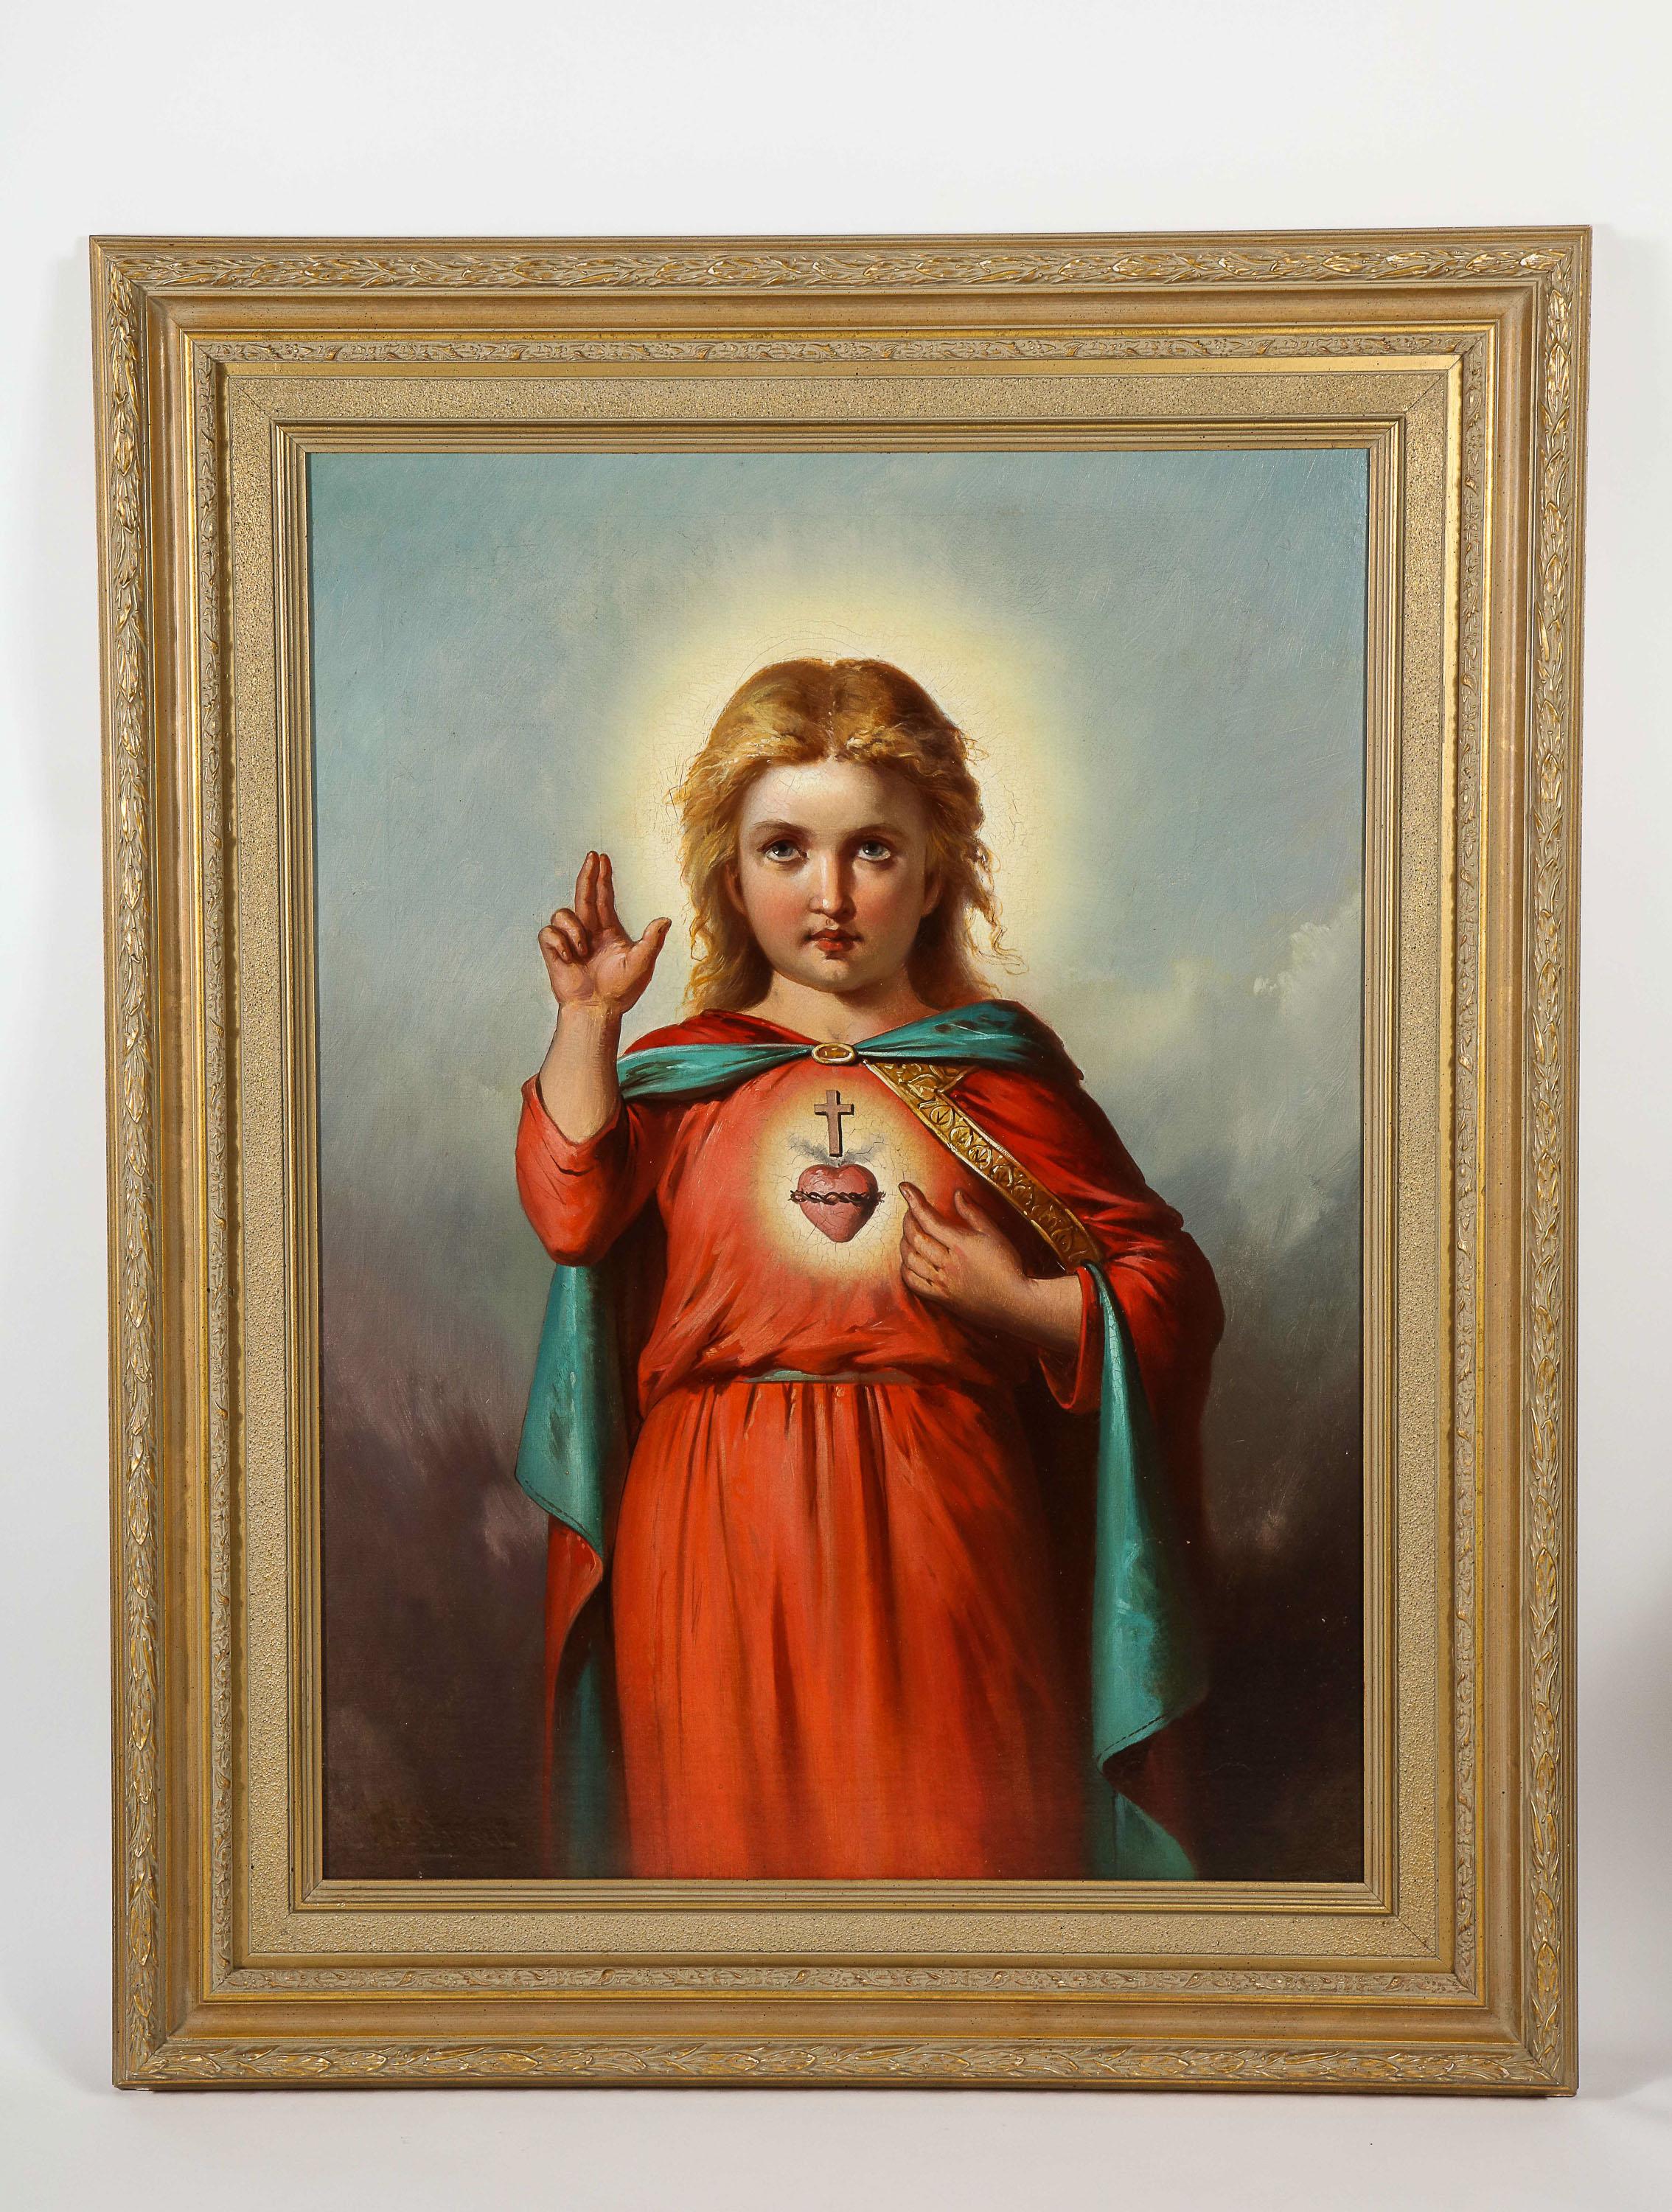 portrait of jesus by little girl